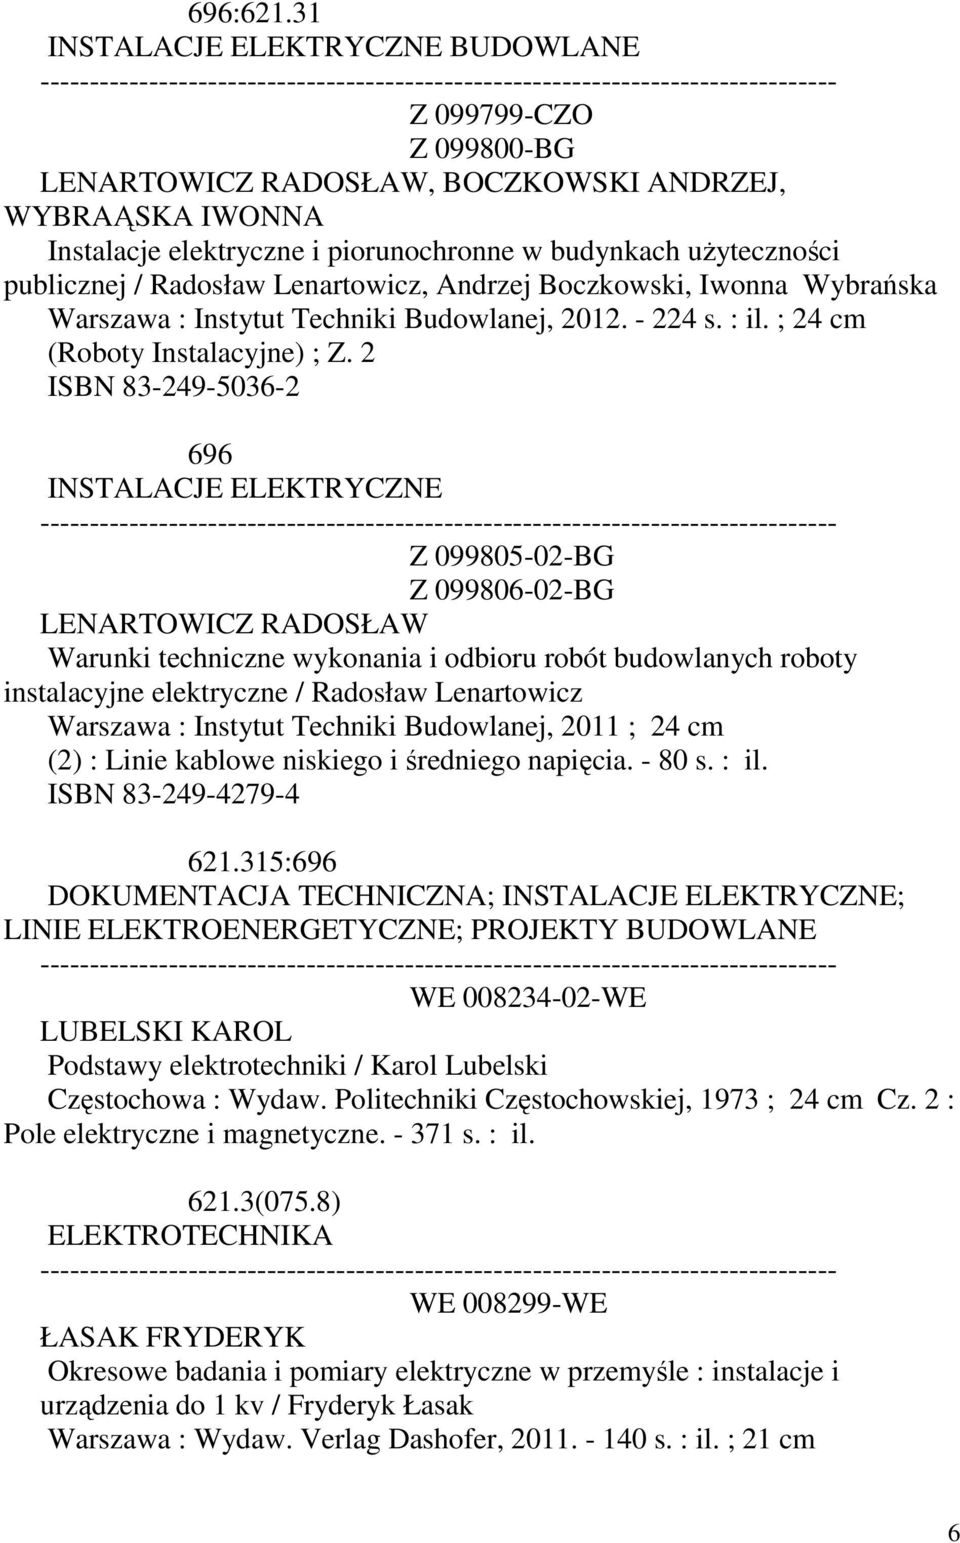 Radosław Lenartowicz, Andrzej Boczkowski, Iwonna Wybrańska Warszawa : Instytut Techniki Budowlanej, 2012. - 224 s. : il. ; (Roboty Instalacyjne) ; Z.